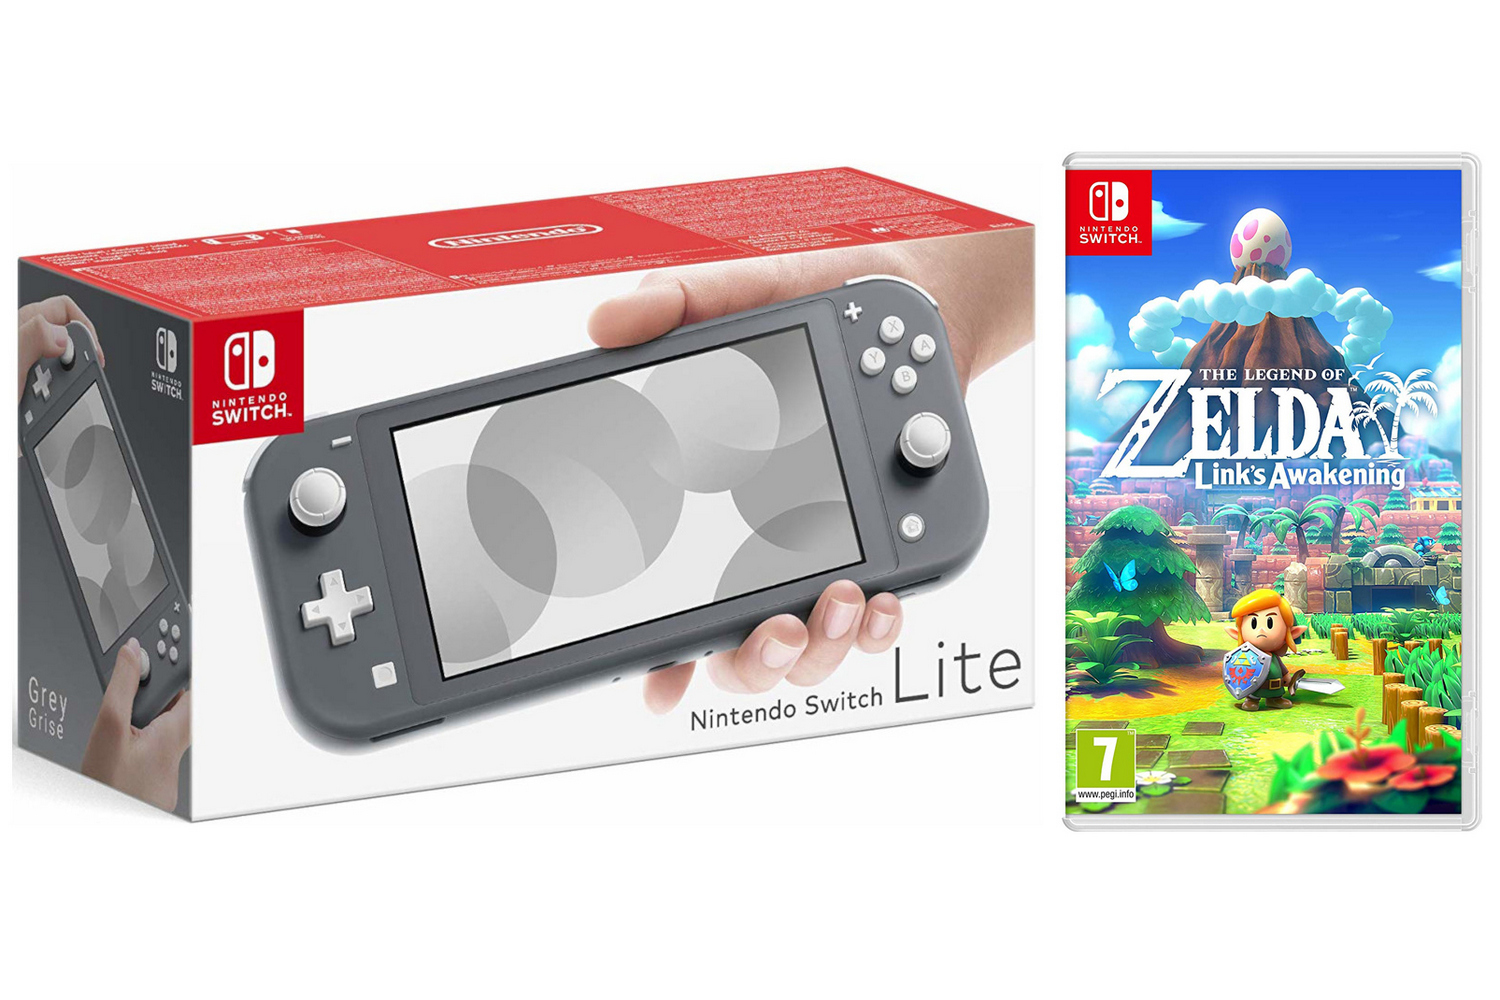 Nintendo Switch Lite - Grey incl. Legend of Zelda: Link's Awakening